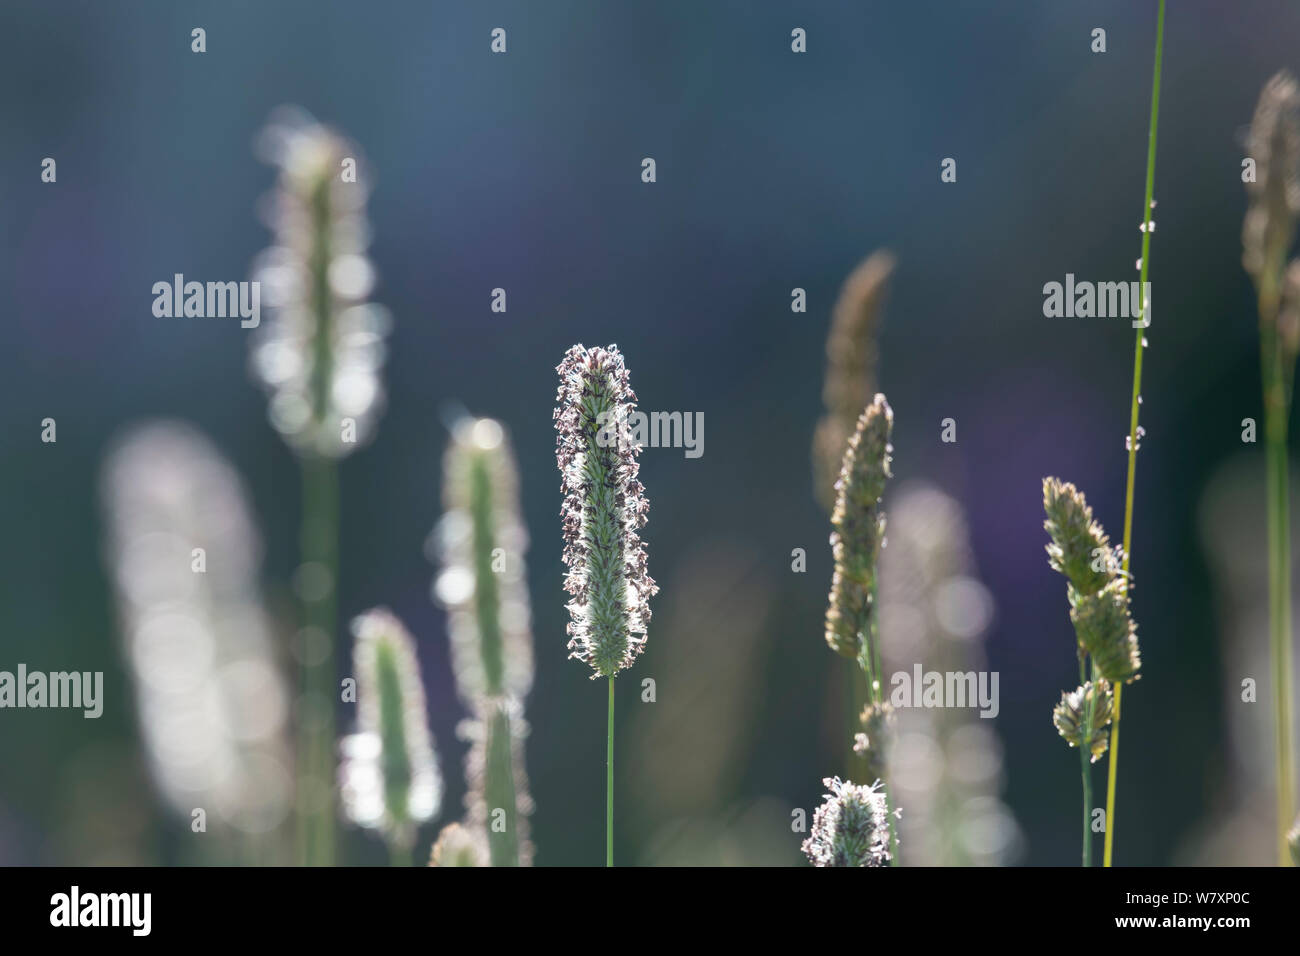 Dettaglio dell'erba a coda di volpe (Alopecurus Geniculatus), retroilluminato Foto Stock